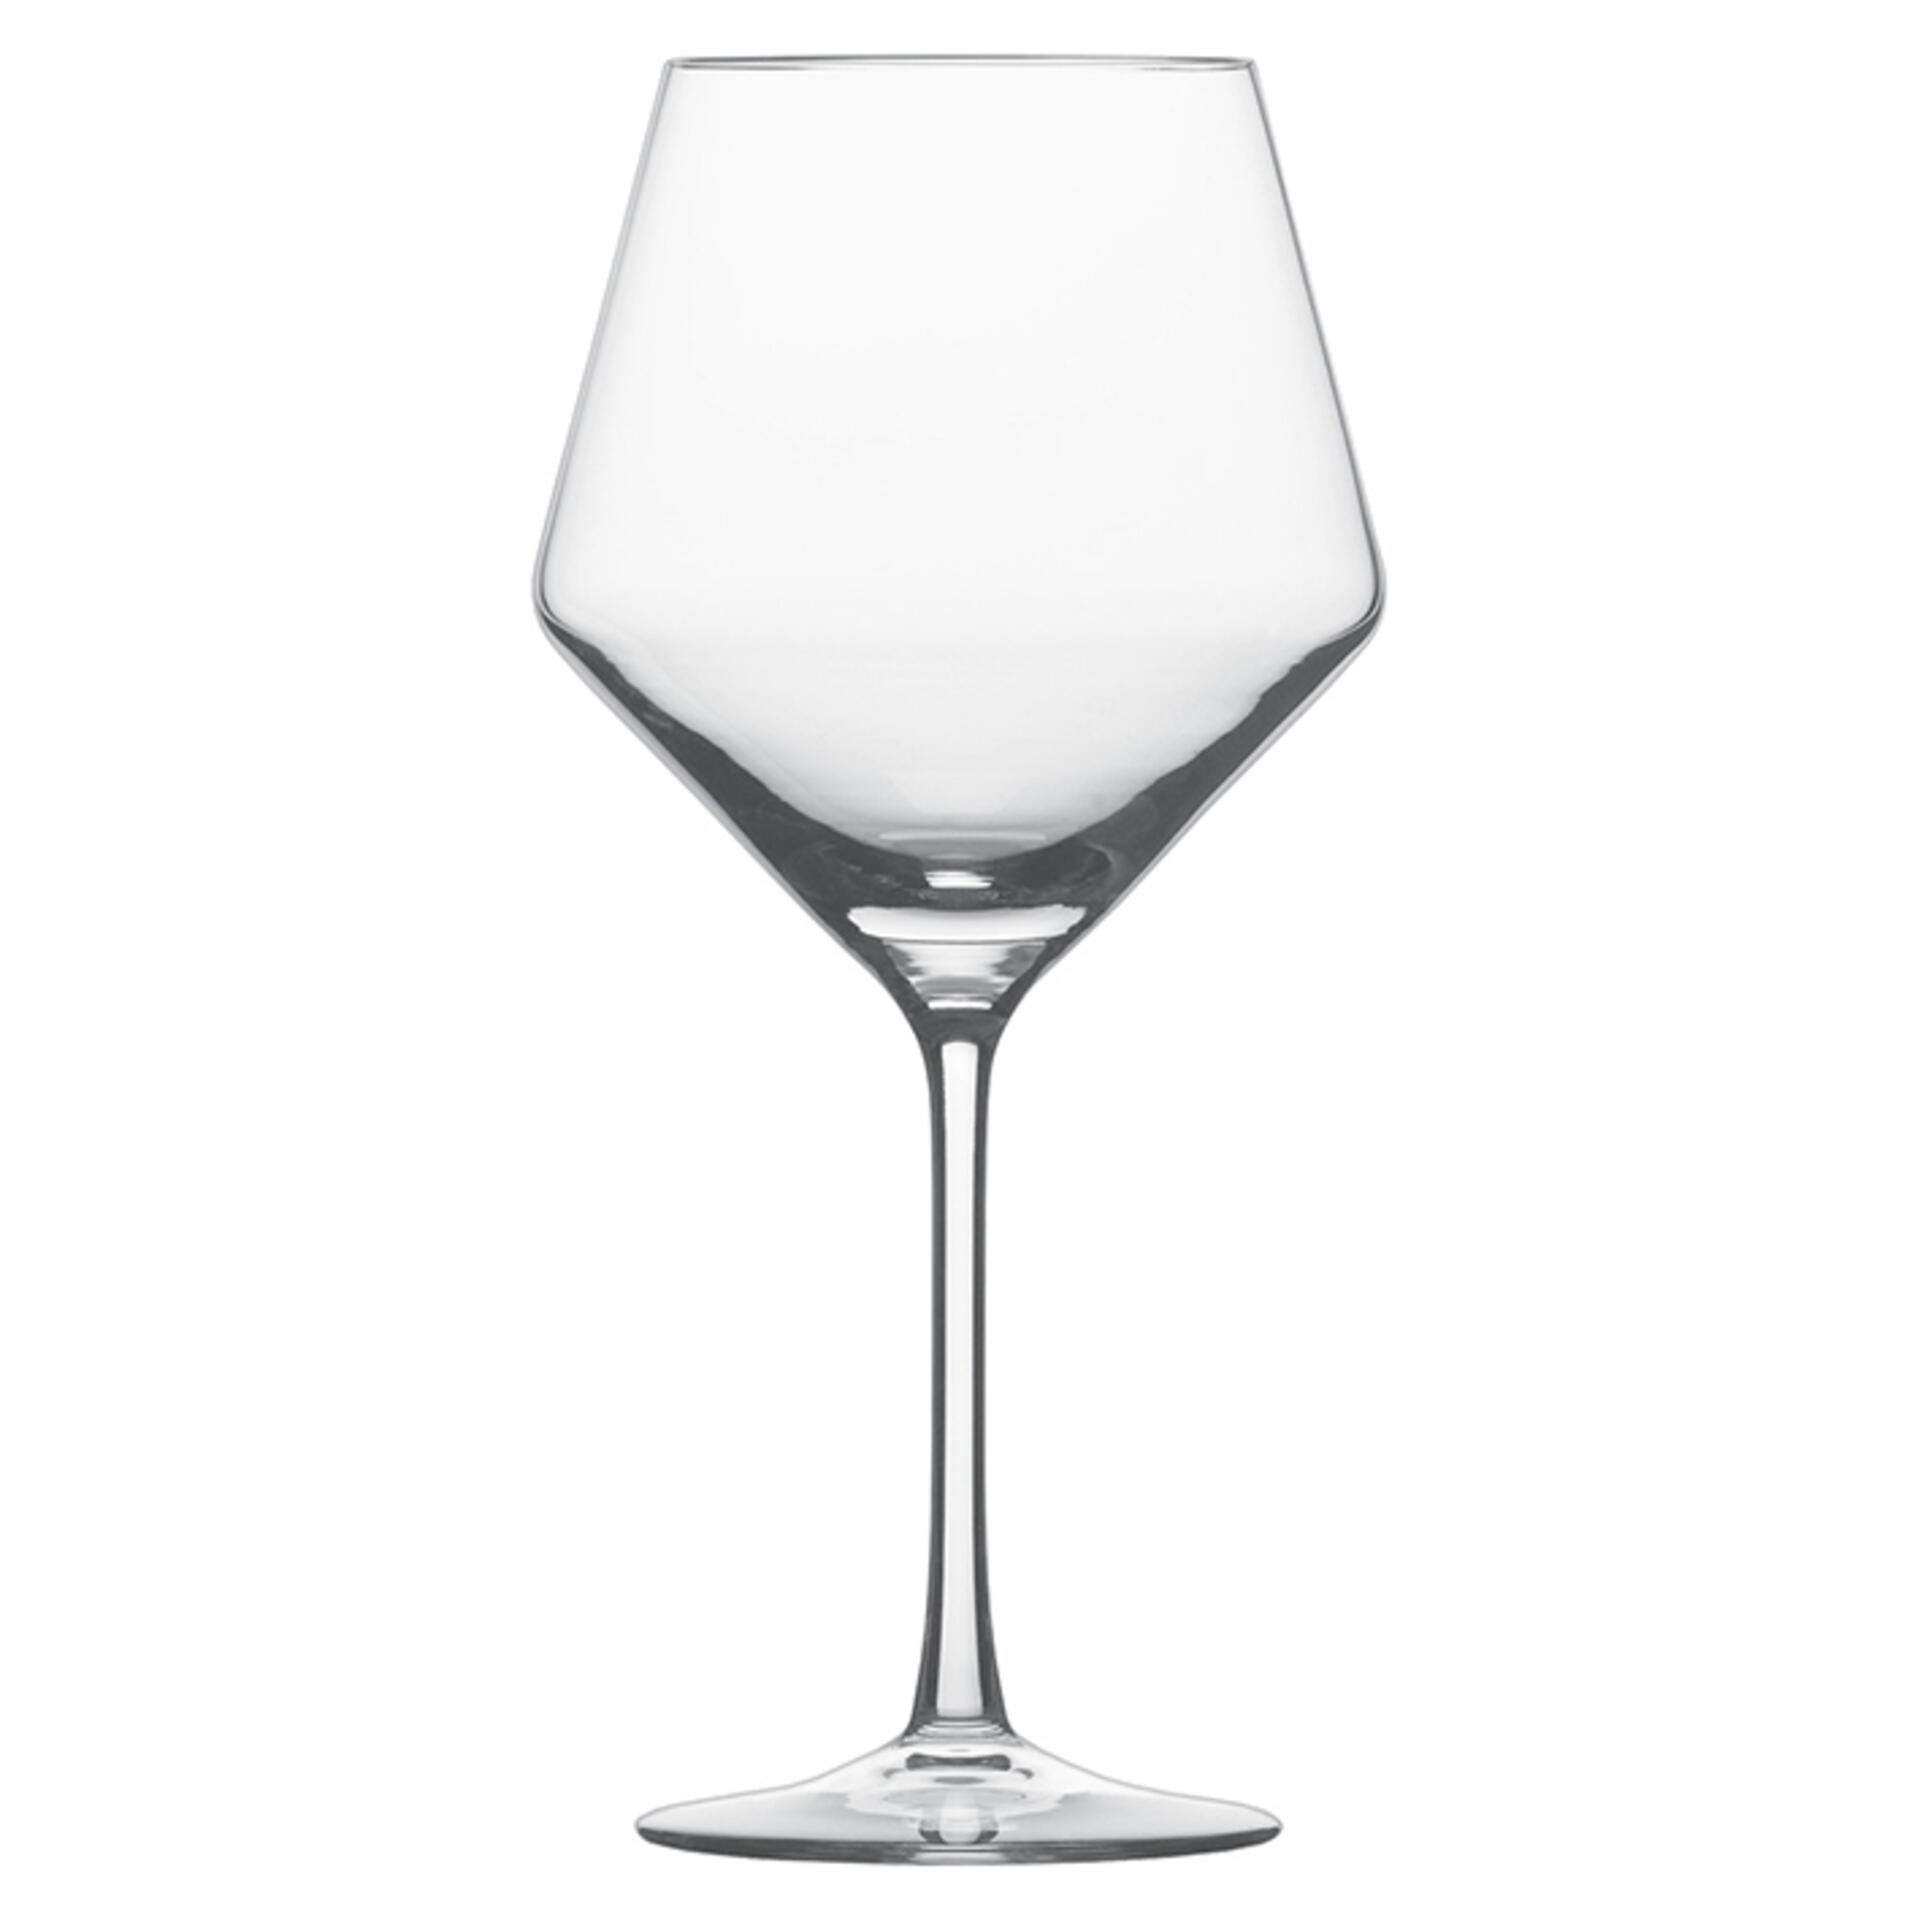 1 Schott Zwiesel Sektglas Volterra  siegniert 19,5 cm Einzelglas,  hochwertig 